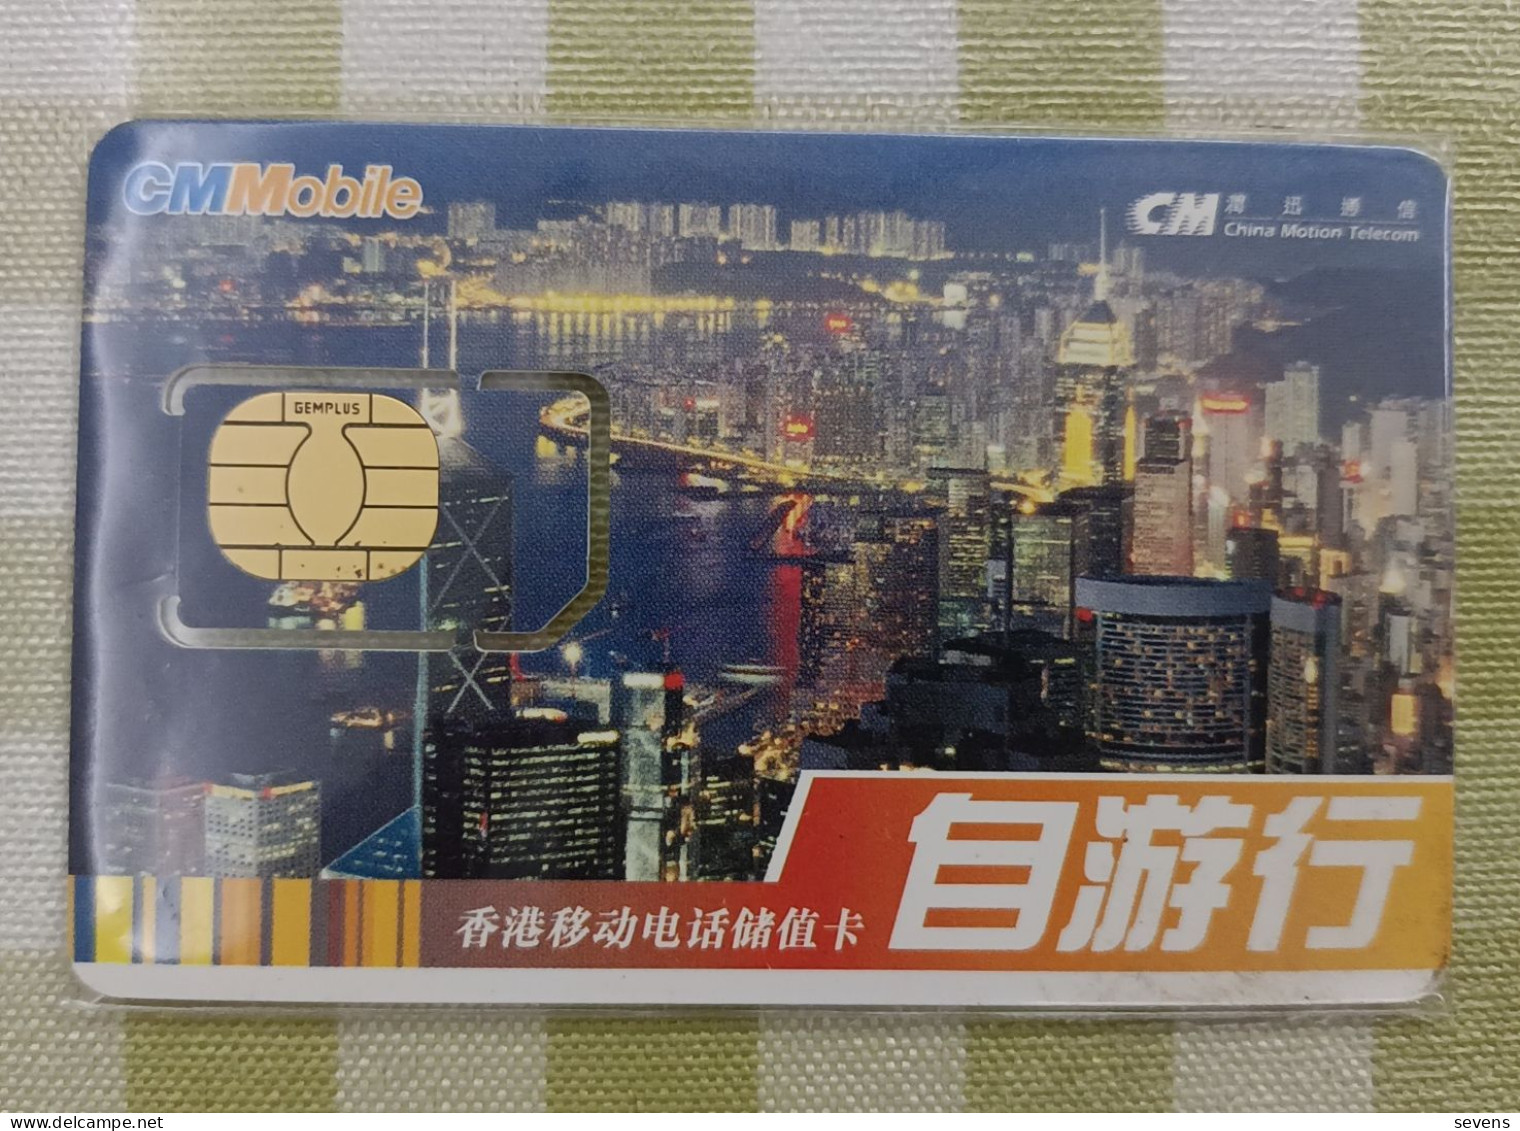 CM Bobile GSM SIM Card, For Tourist, Night View, Fixed Chip - Hongkong